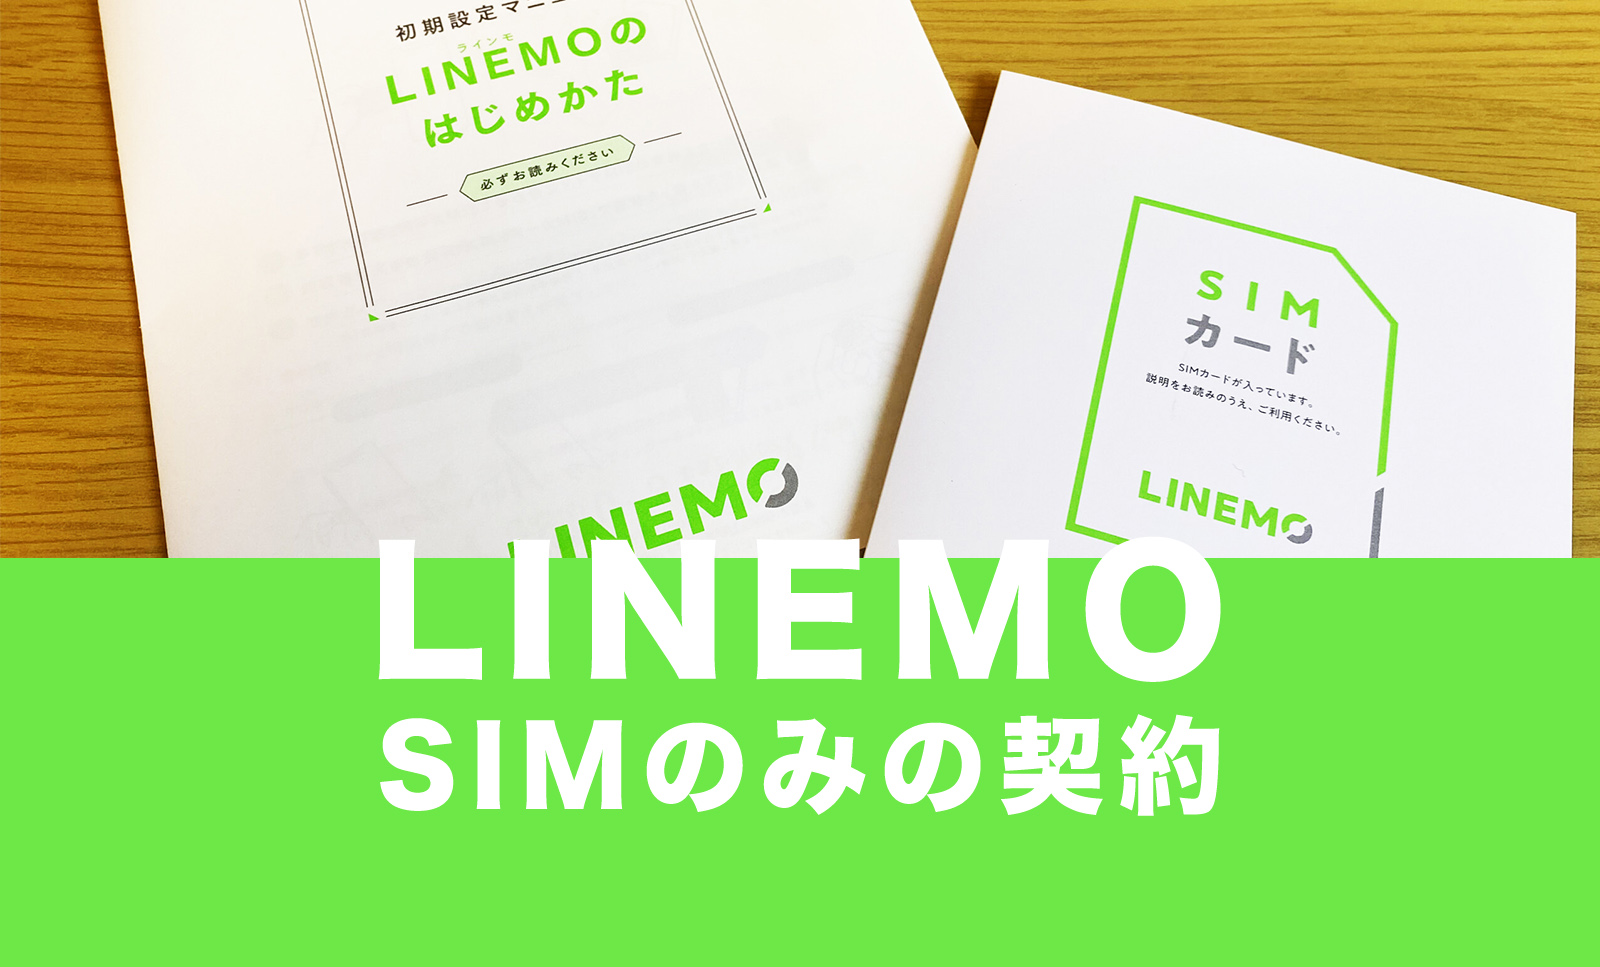 LINEMO(ラインモ)はSIMカードのみ契約が可能で端末販売なしのサムネイル画像